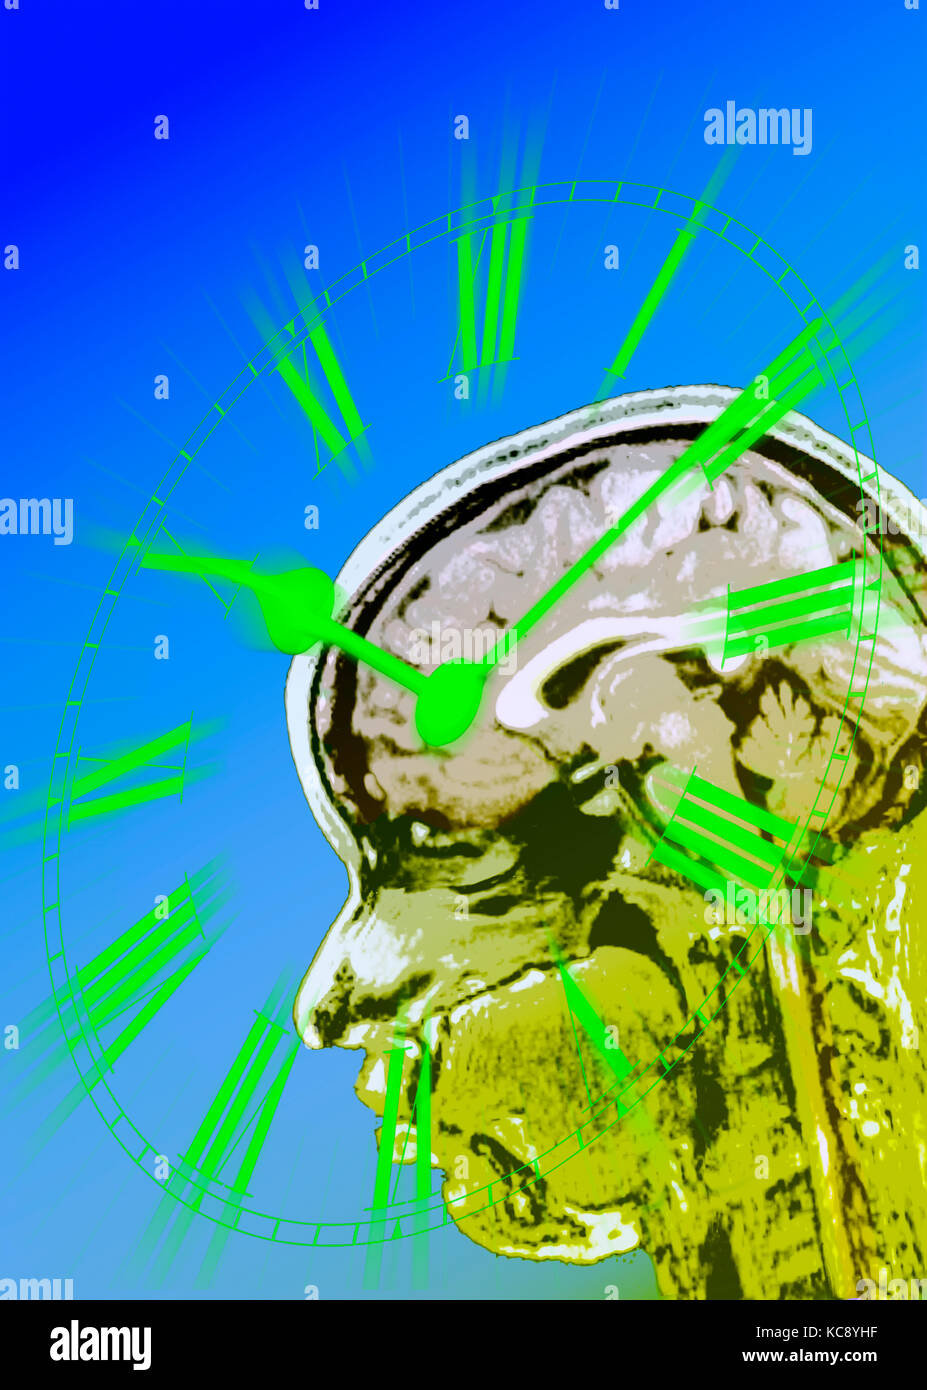 Multi-Bild von Ziffernblatt und MRI-Scans auf den Körper-Clock oder zirkadianen Rhythmus Sinn im menschlichen Gehirn darstellen. Stockfoto